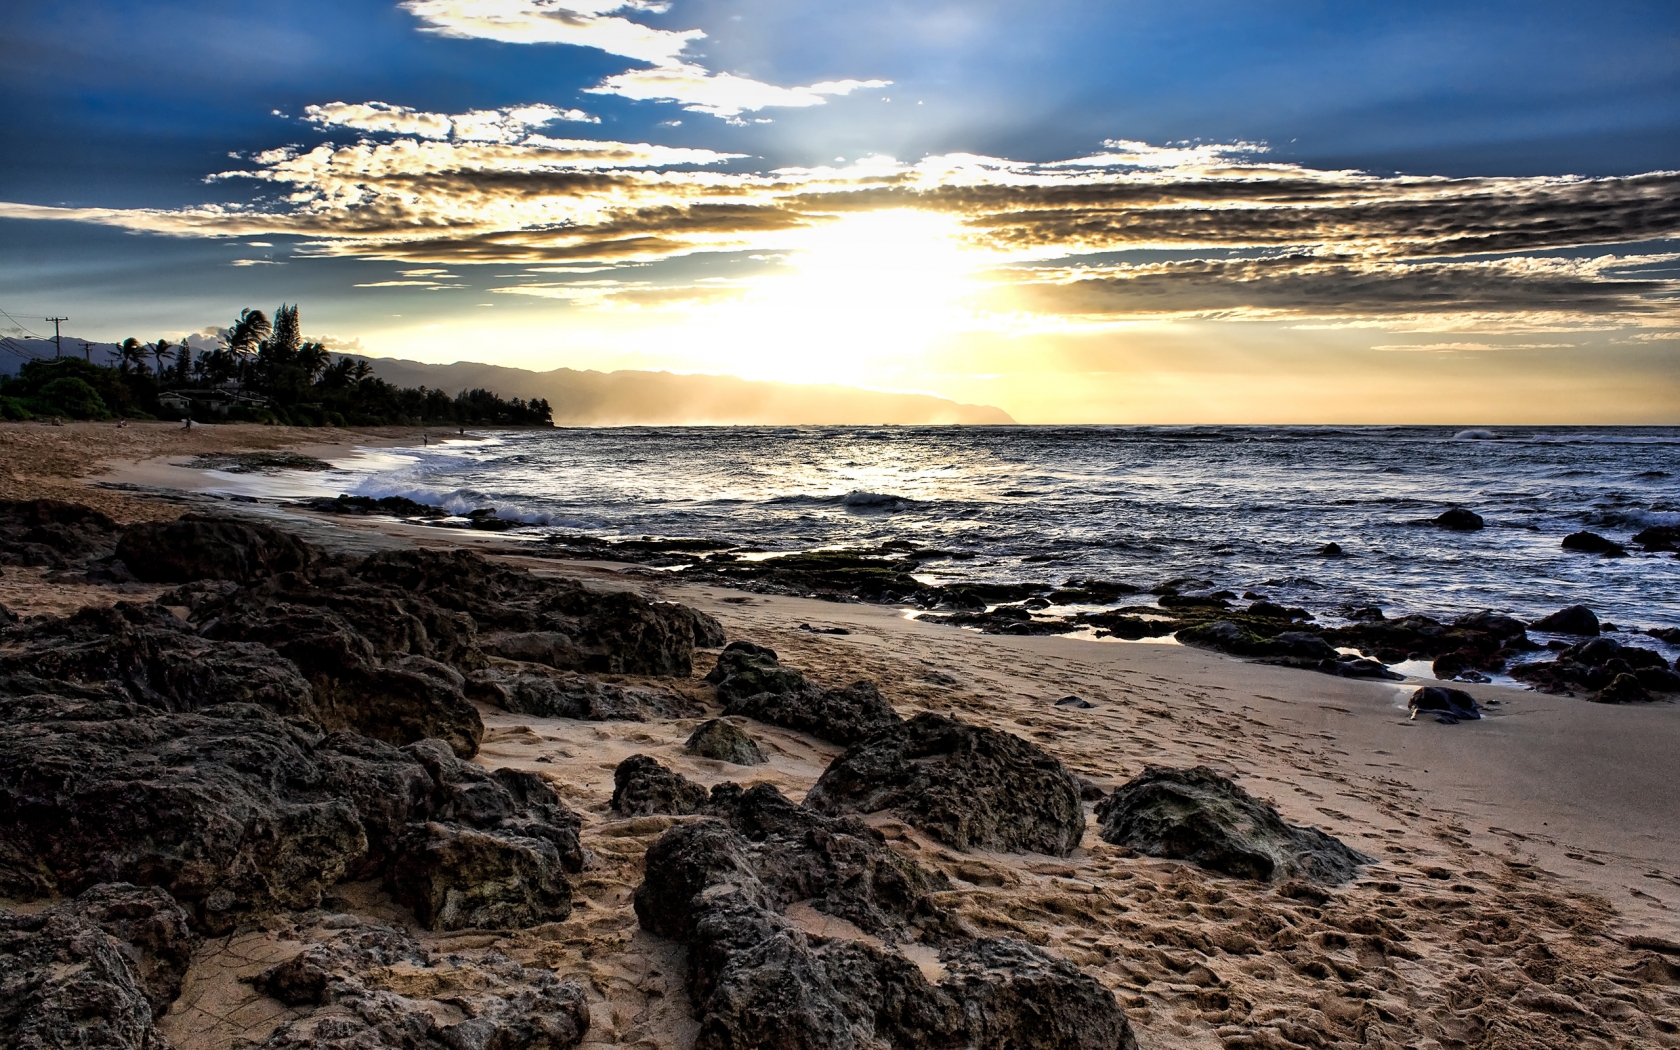 Laniakea Sunset for 1680 x 1050 widescreen resolution